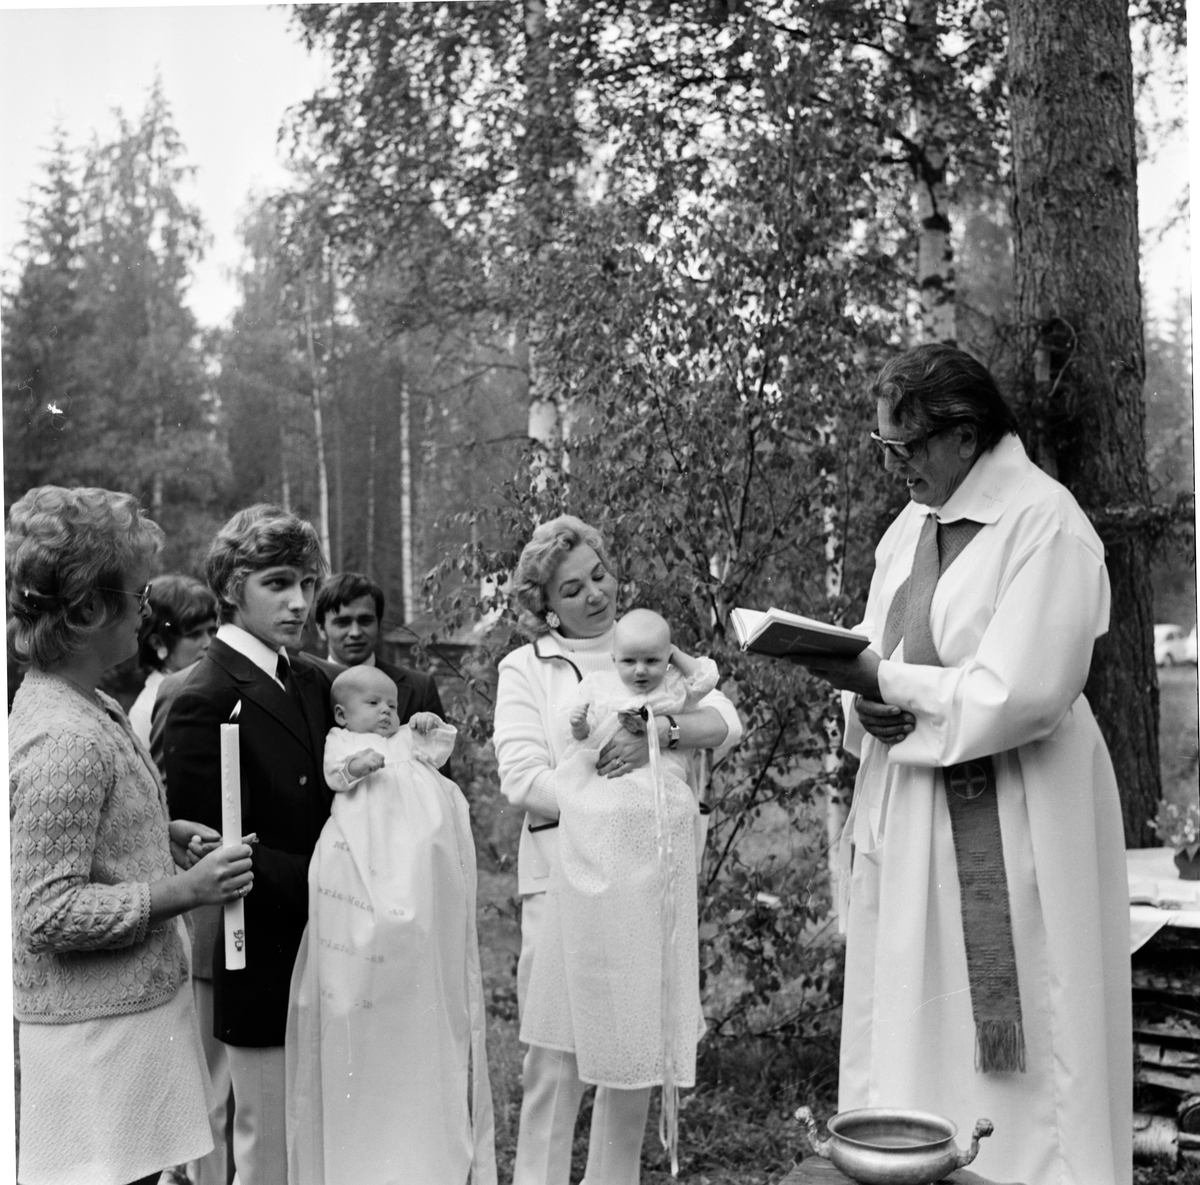 Arbrå,
Gudstjänst på Änga-Nybo,
Juni 1971